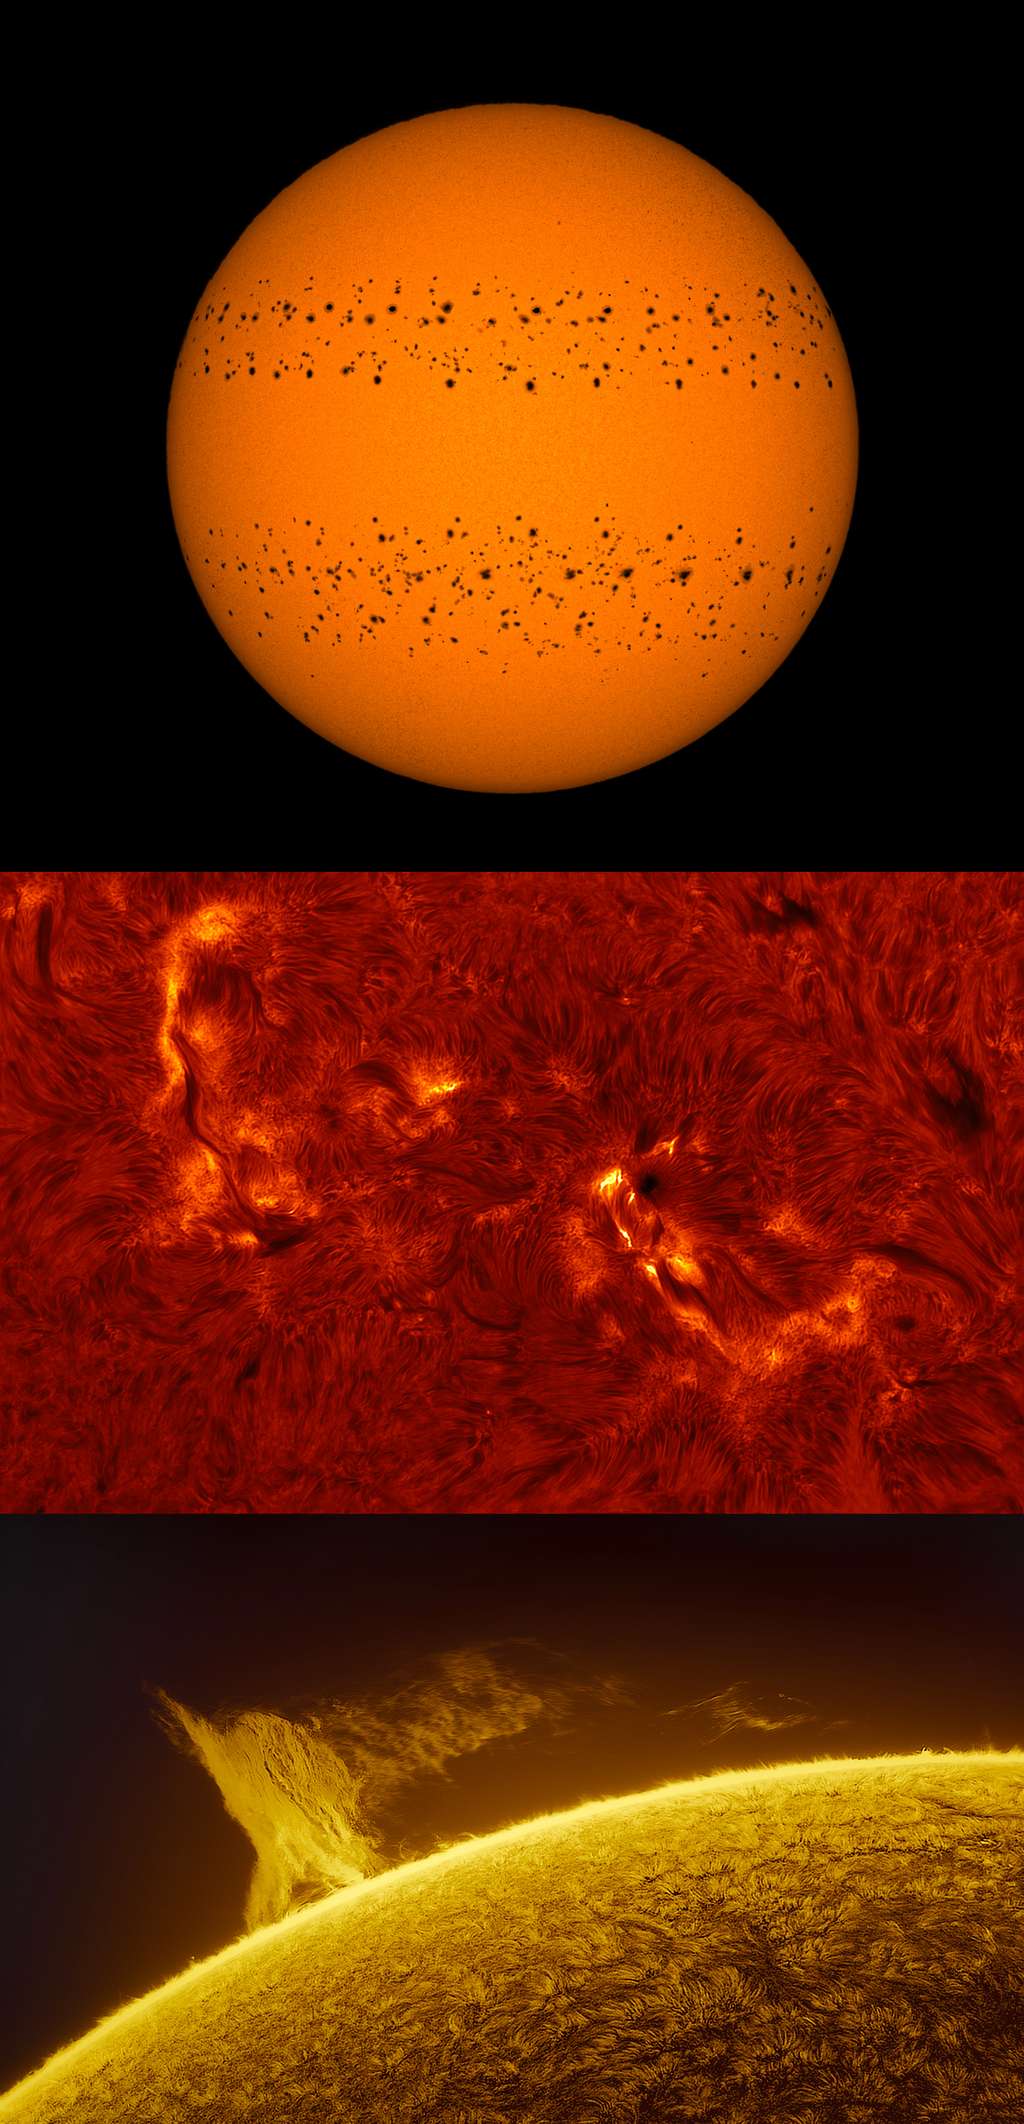 Ces trois images ont été primées dans la catégorie « Soleil ». L’image du haut montre un composite du Soleil. Soumyadeep Mukherjee a pris des images du Soleil pendant 365 jours entre le 25 décembre 2020 et le 31 décembre 2021 (il n'a manqué que six jours pendant cette période). Il a ensuite composé ce cliché montrant ces deux bandes de taches solaires.<br>L'image du milieu, signée Stuart Green, montre une région active du Soleil vu dans d'une étroite bande rouge connue sous le nom de H-alphaline. <br>Quant à l’image du bas, prise par Miguel Claro, elle montre une gigantesque proéminence solaire (visible pendant deux jours en février 2022) apparaître au-dessus de la chromosphère. 